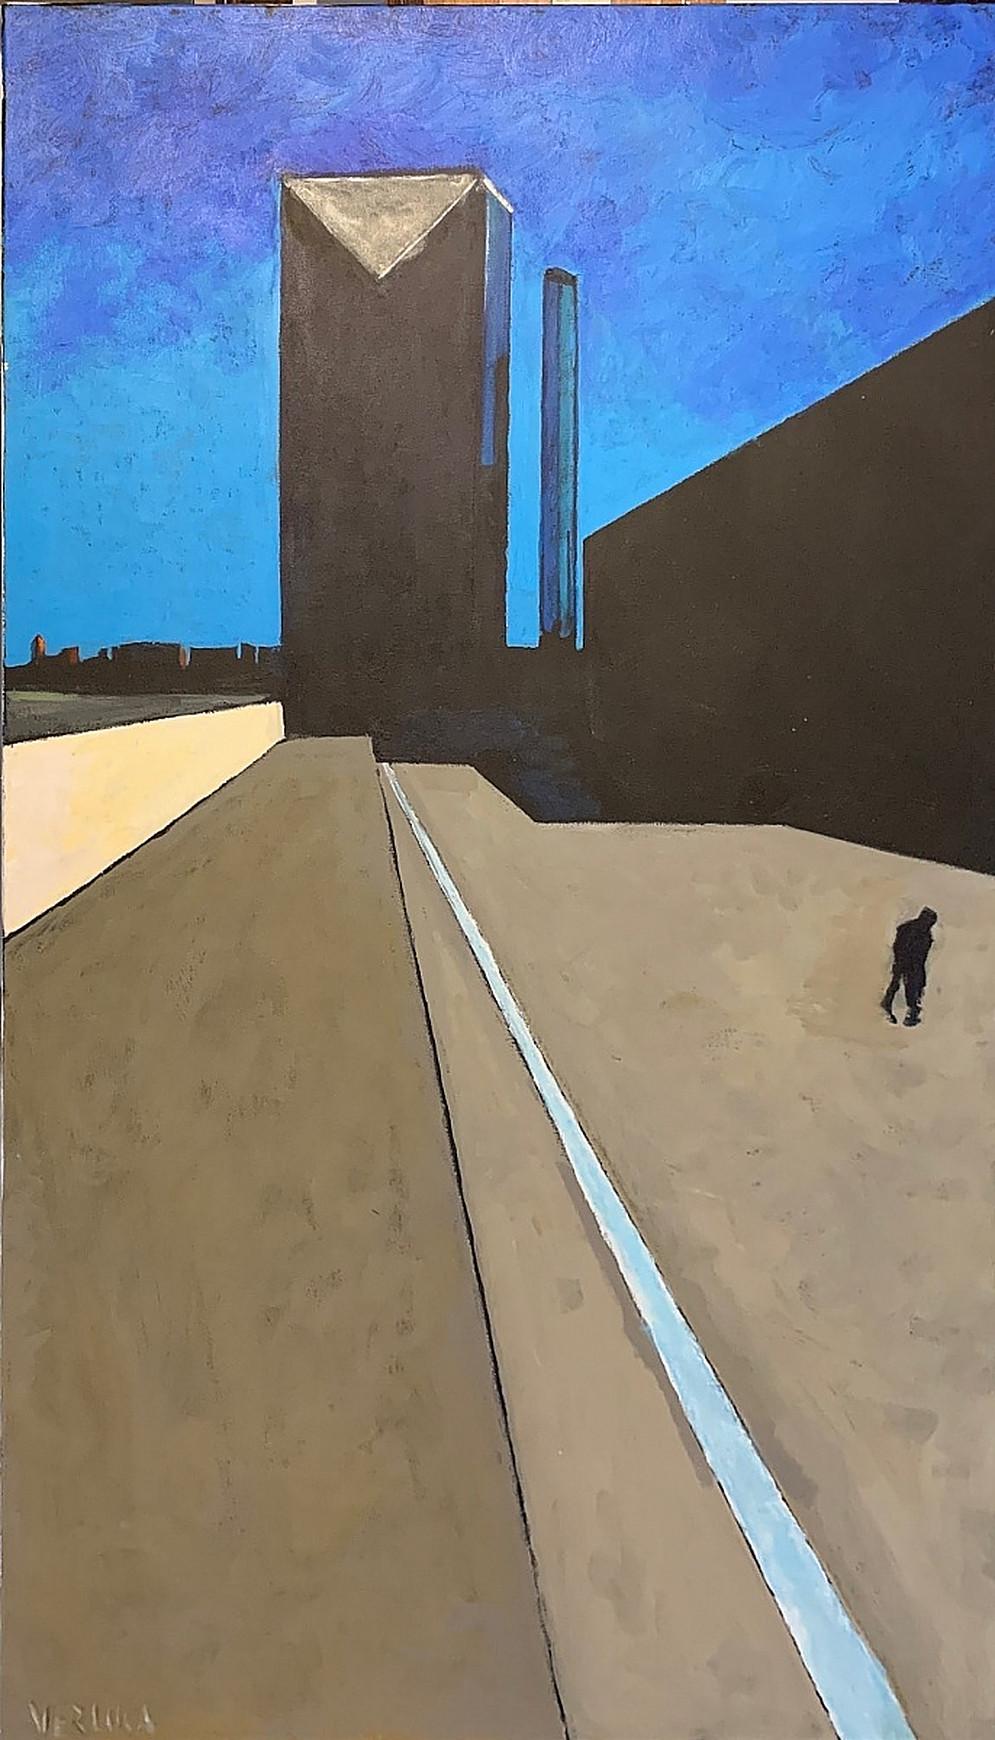 Robert VERLUCA  Landscape Painting -  Downtown, 2018 